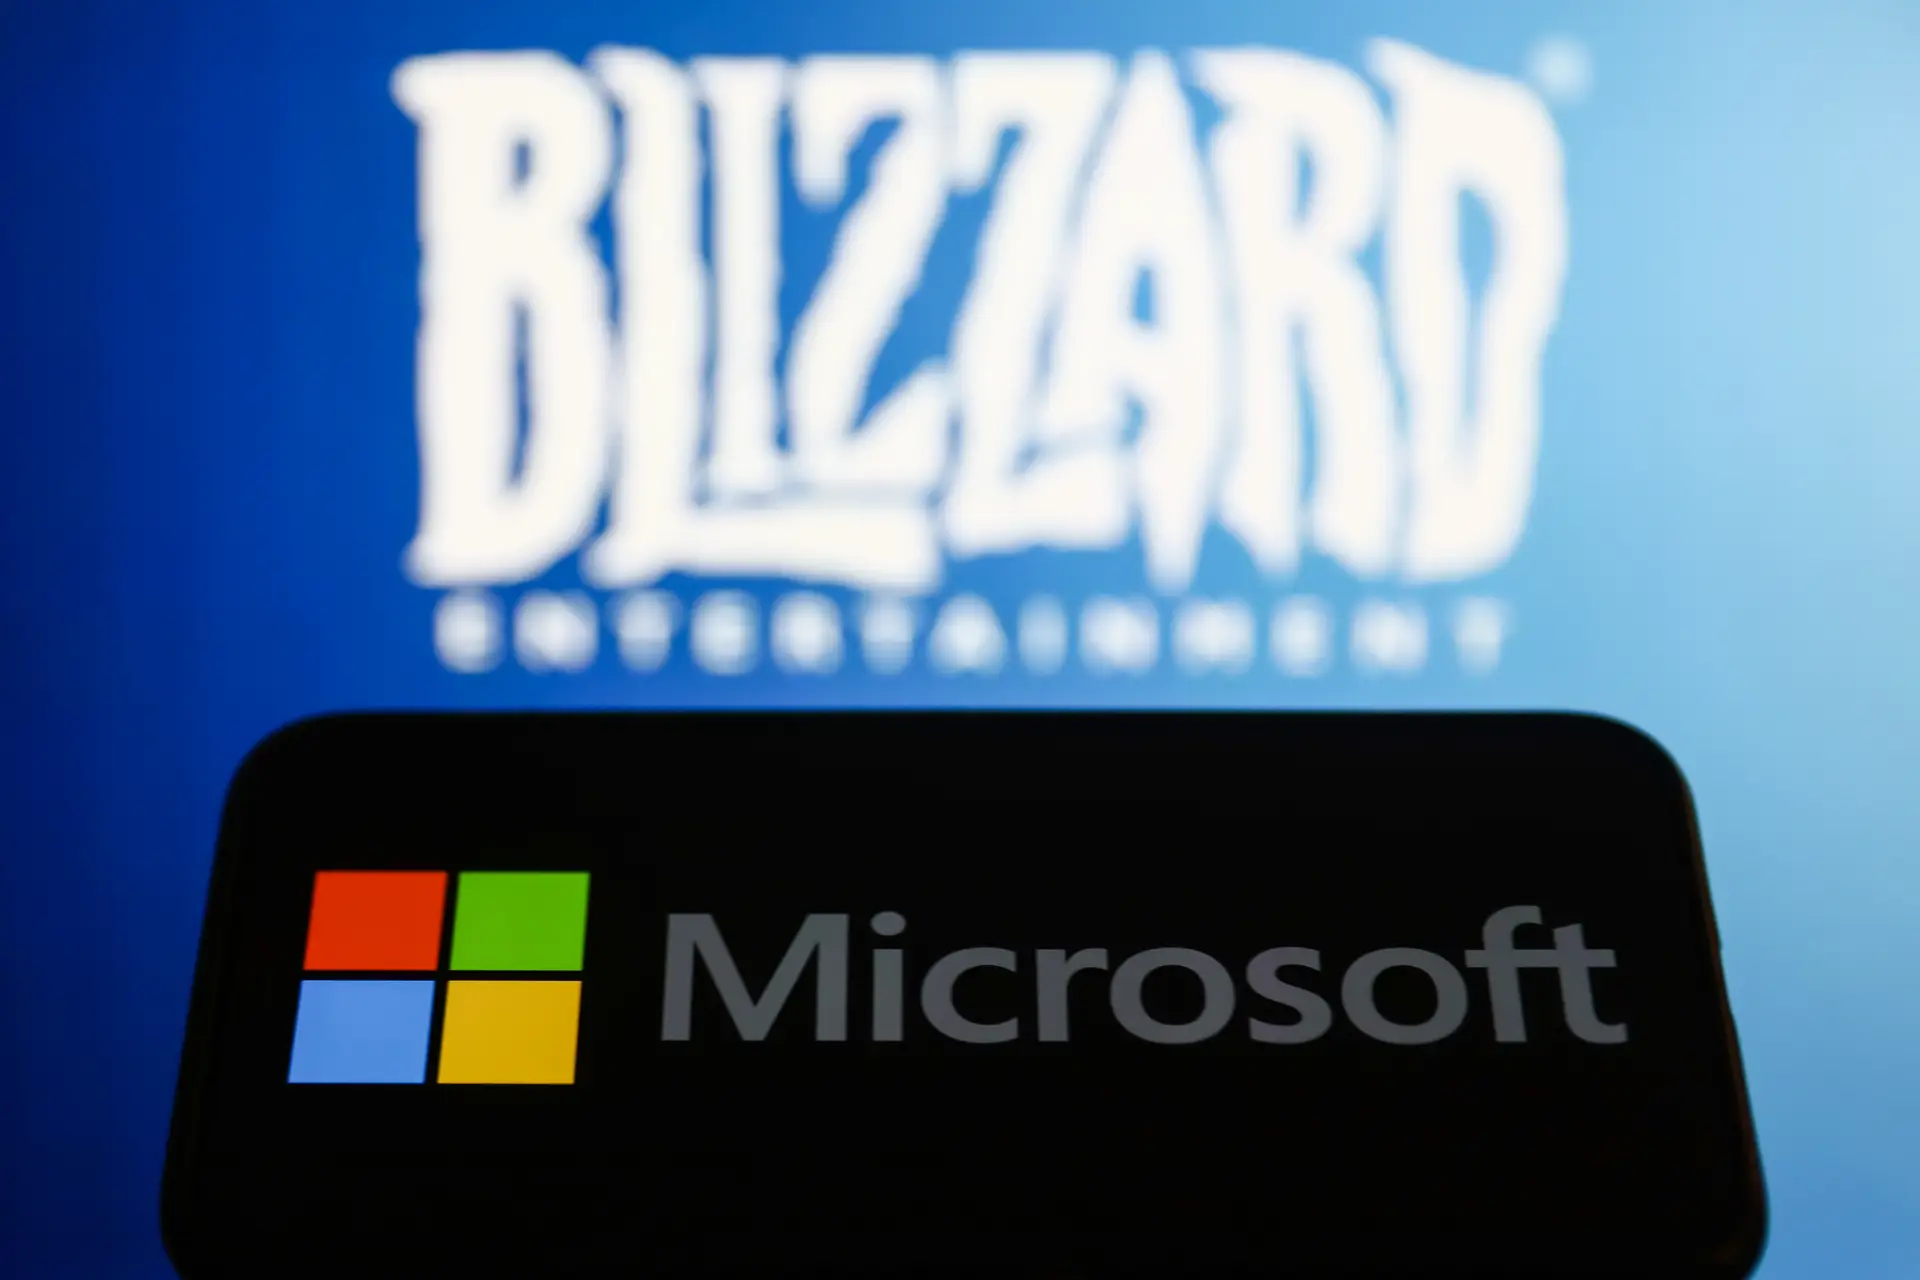 Microsoft conclui aquisição da Activision Blizzard após quase 2